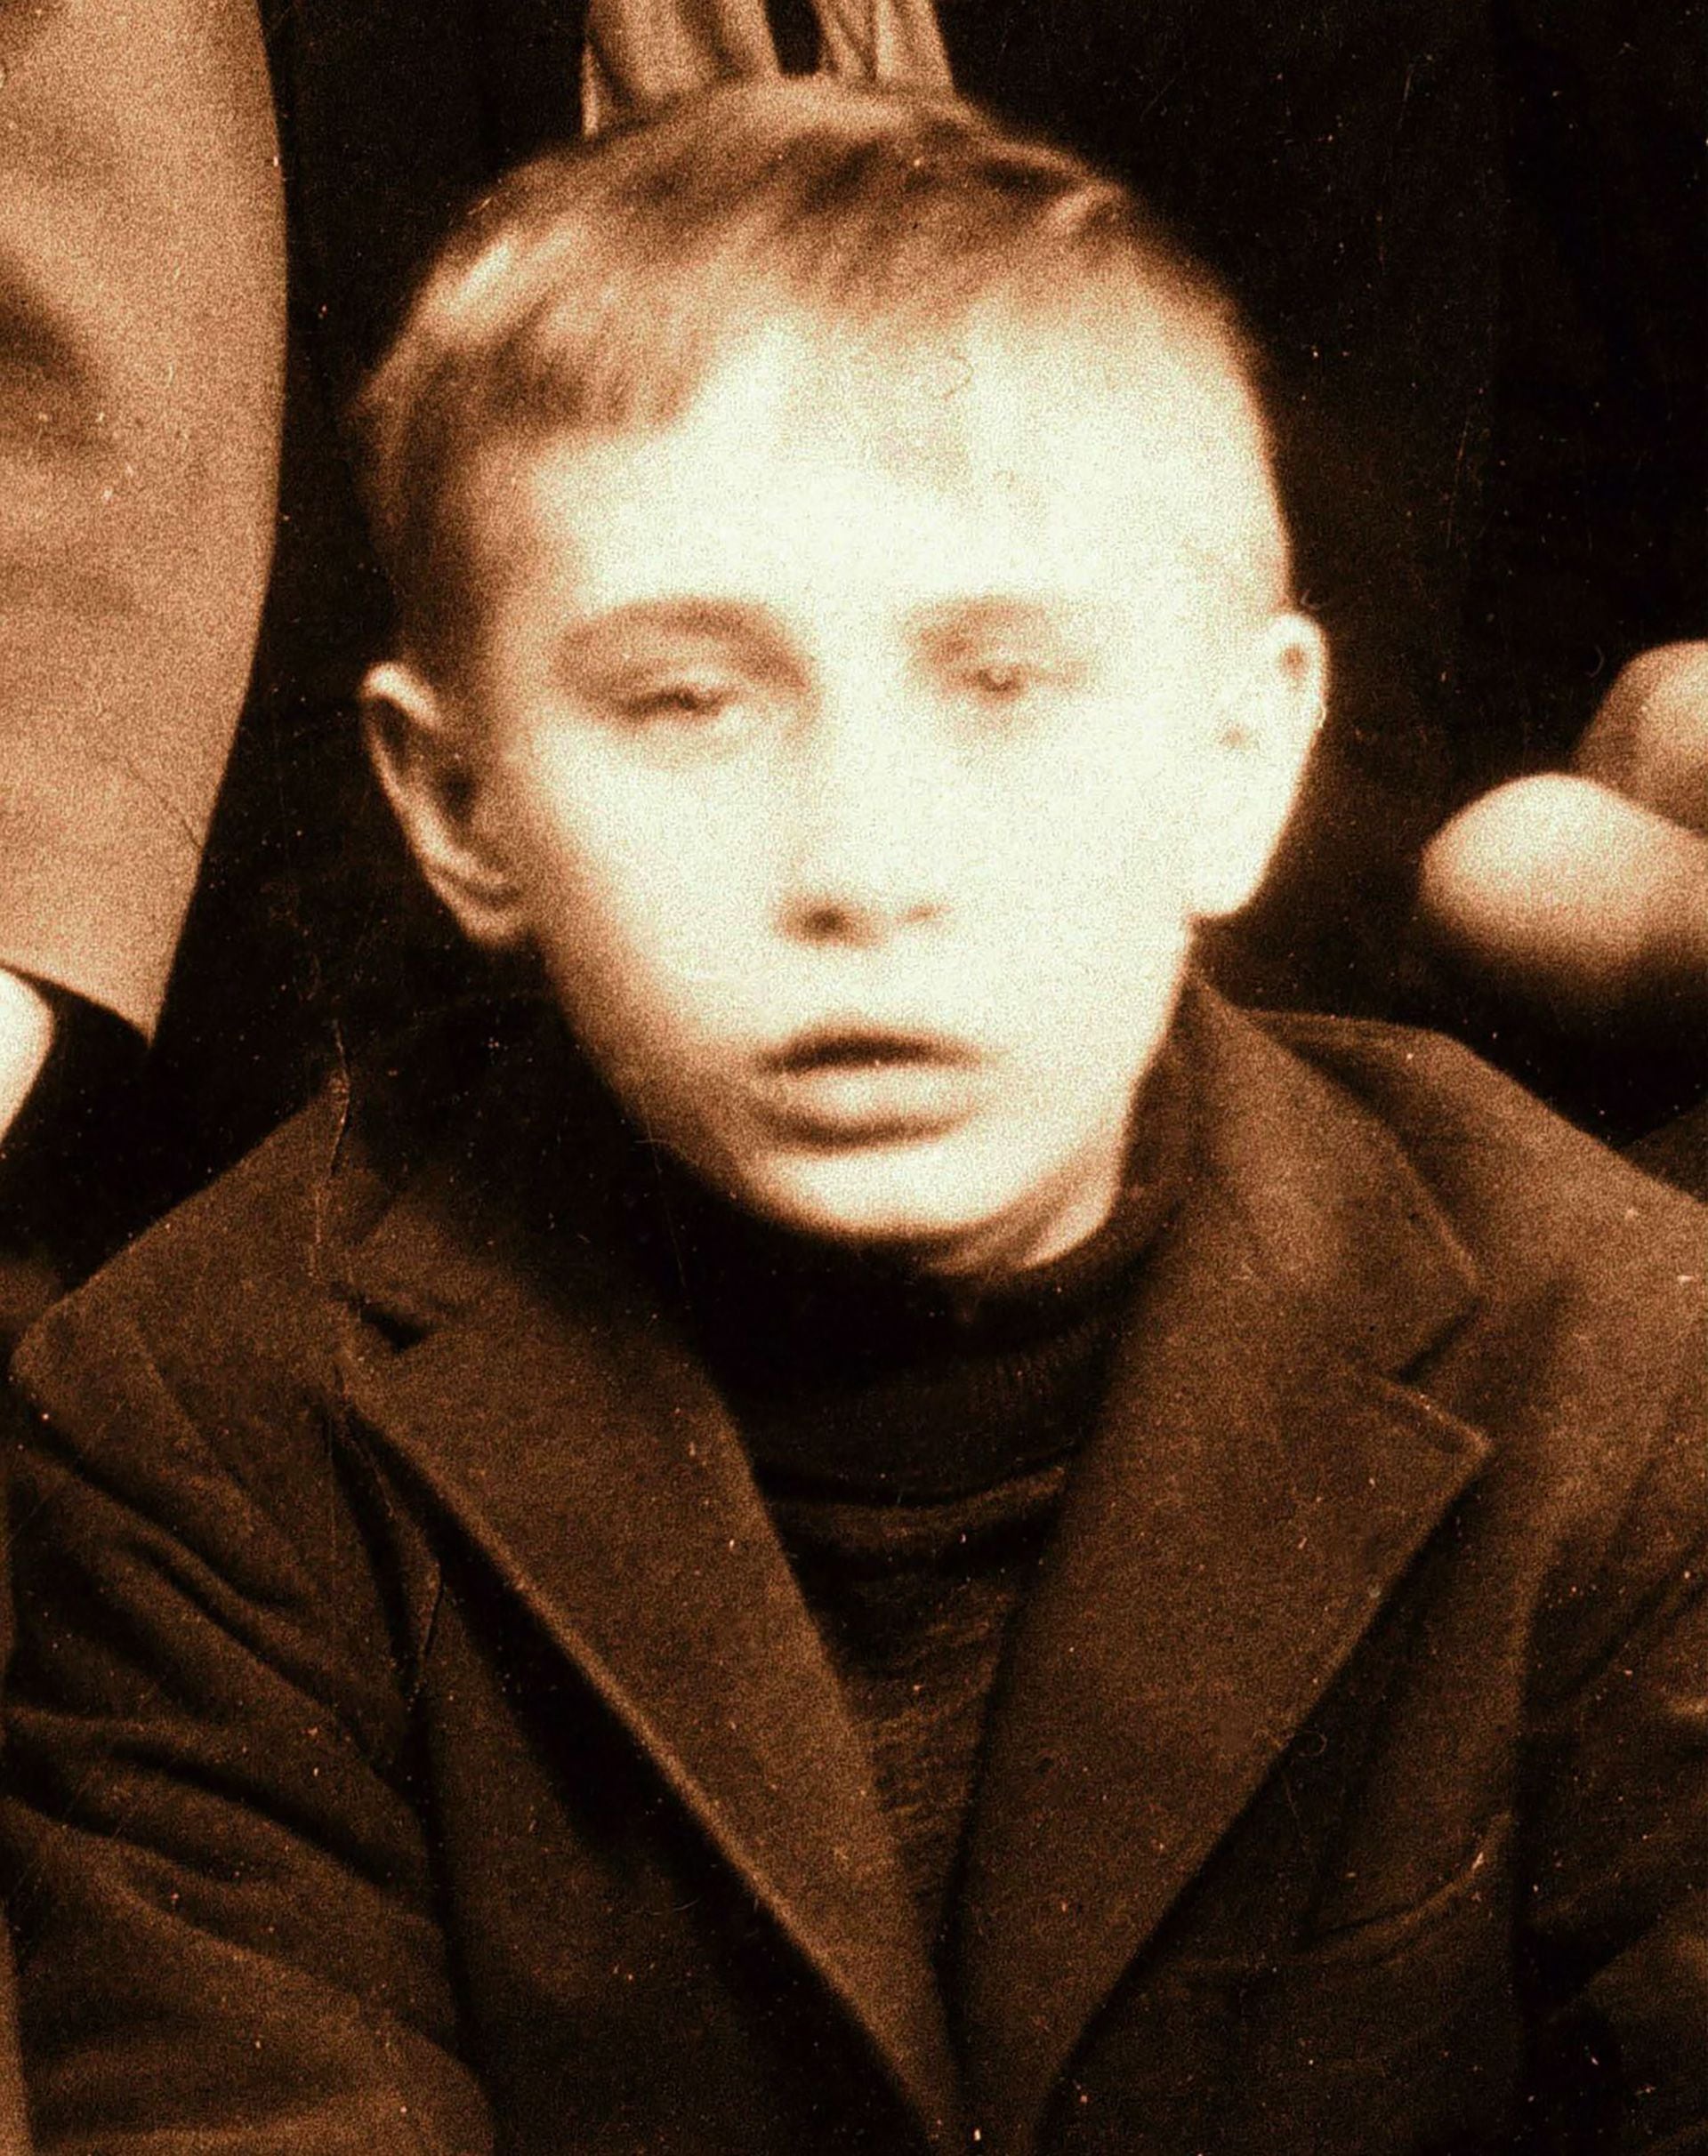 Una foto de Vladimir Putin en la escuela, datada entre 1964 y 1965 (Photo by Laski Diffusion)